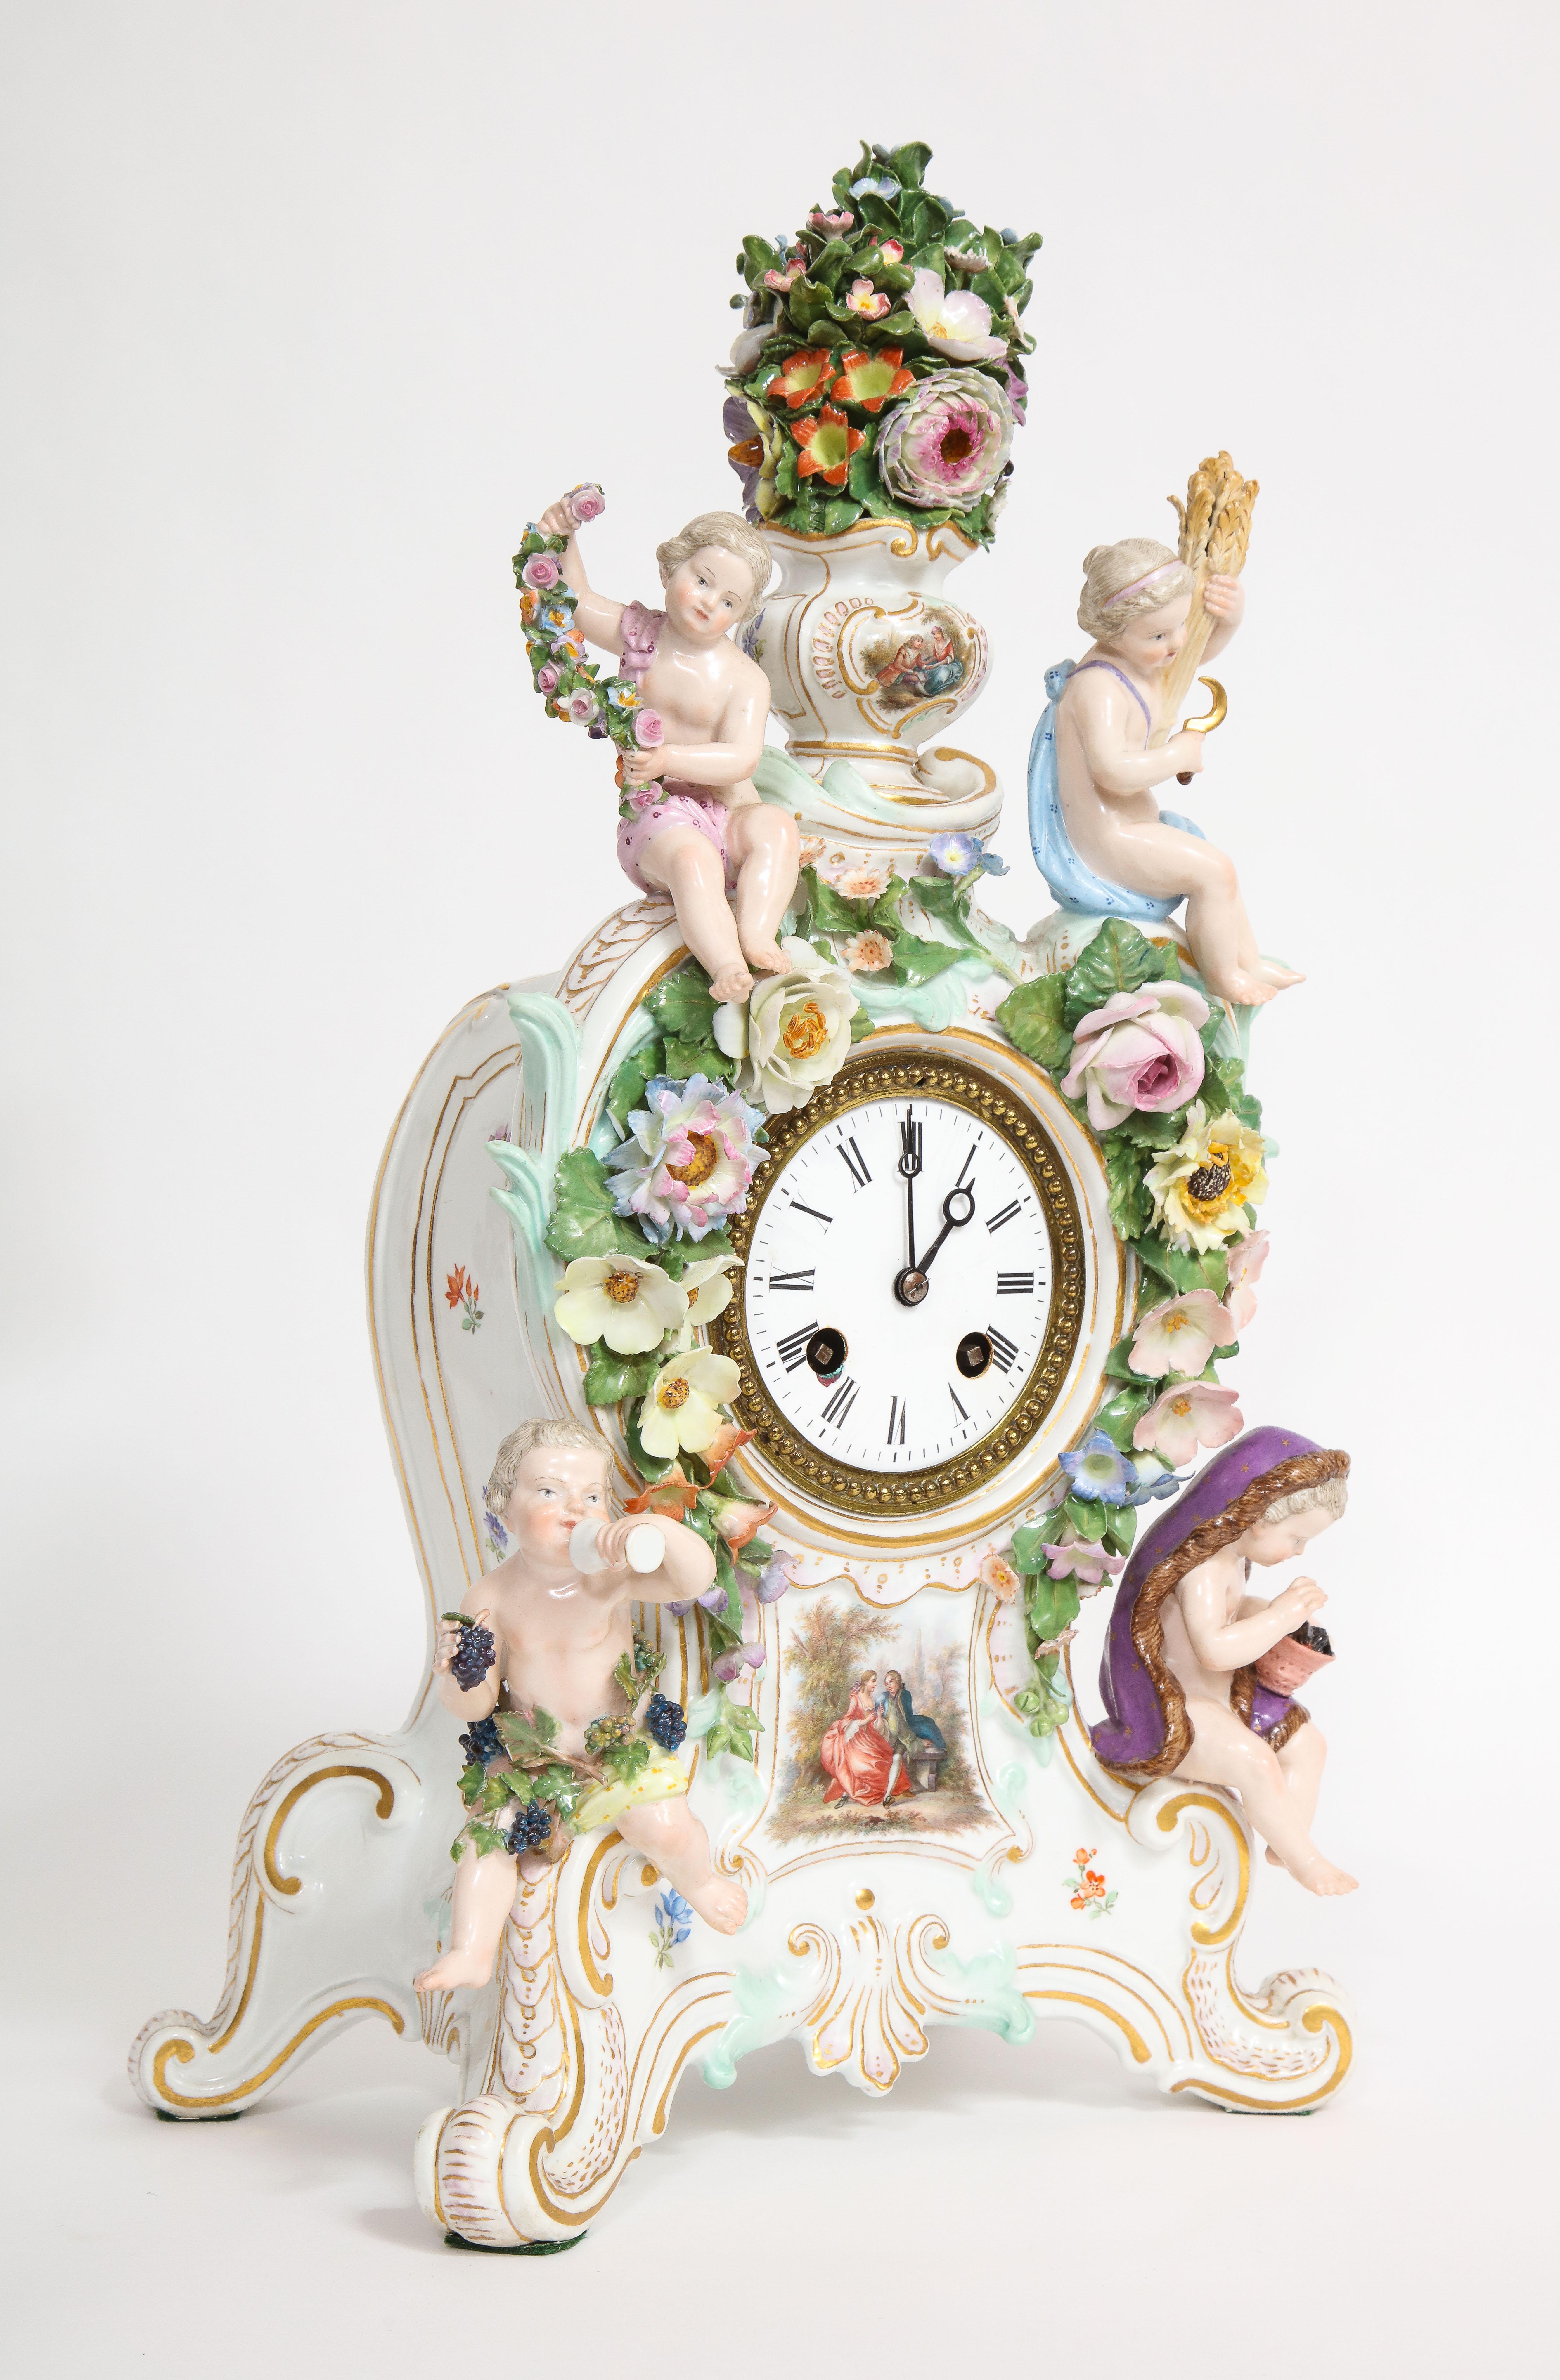 19. Jh. Meissen Porcelain Rokoko 4 Jahreszeiten Uhr & Kandelaber Garnitur Set (Handgeschnitzt)